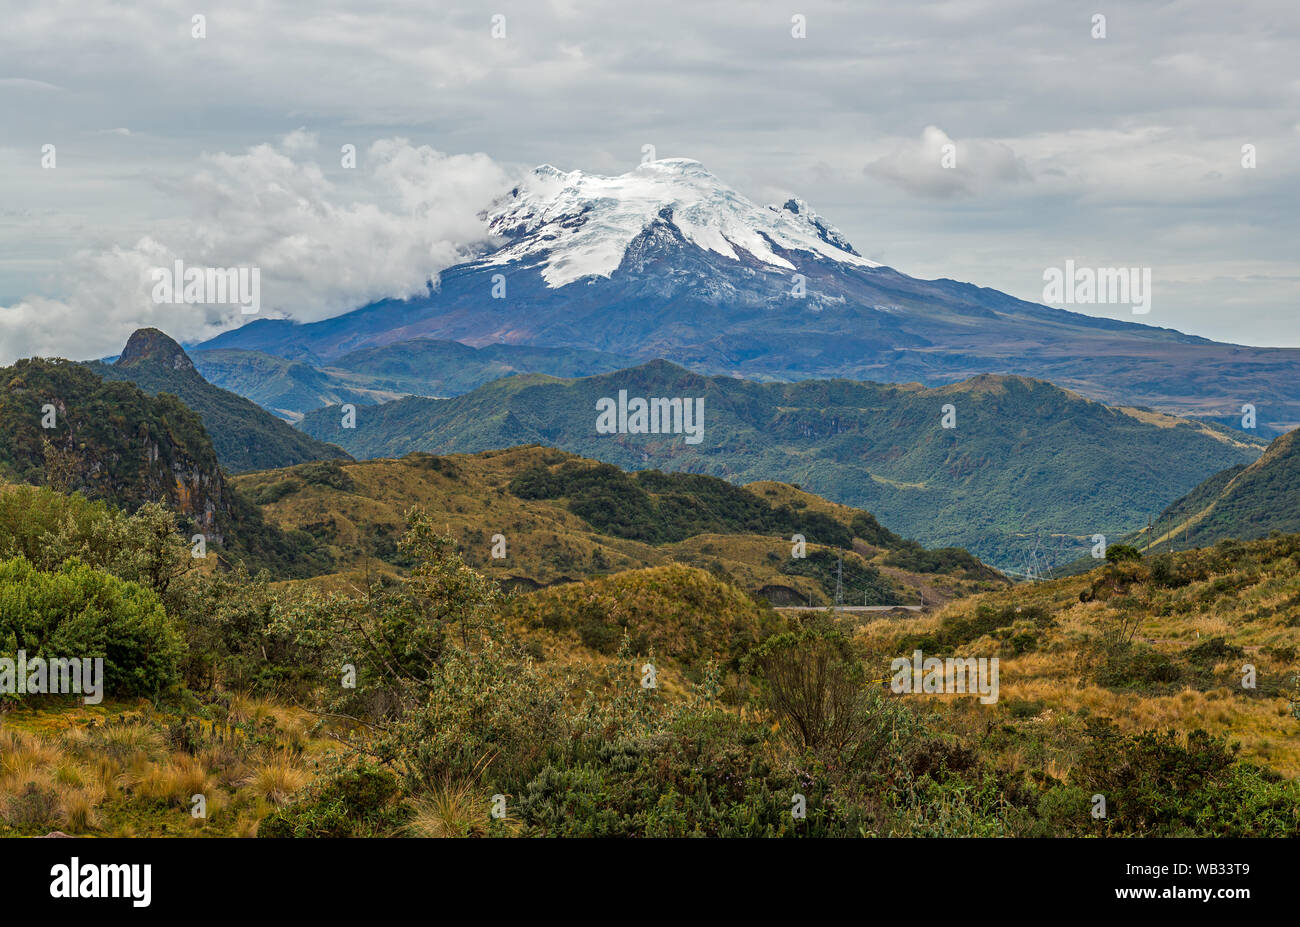 Paisaje con el pico del volcán Artisana con nieve y hielo dentro de la Reserva Ecológica Antisana en la cordillera de Los Andes, cerca de Quito, Ecuador. Foto de stock